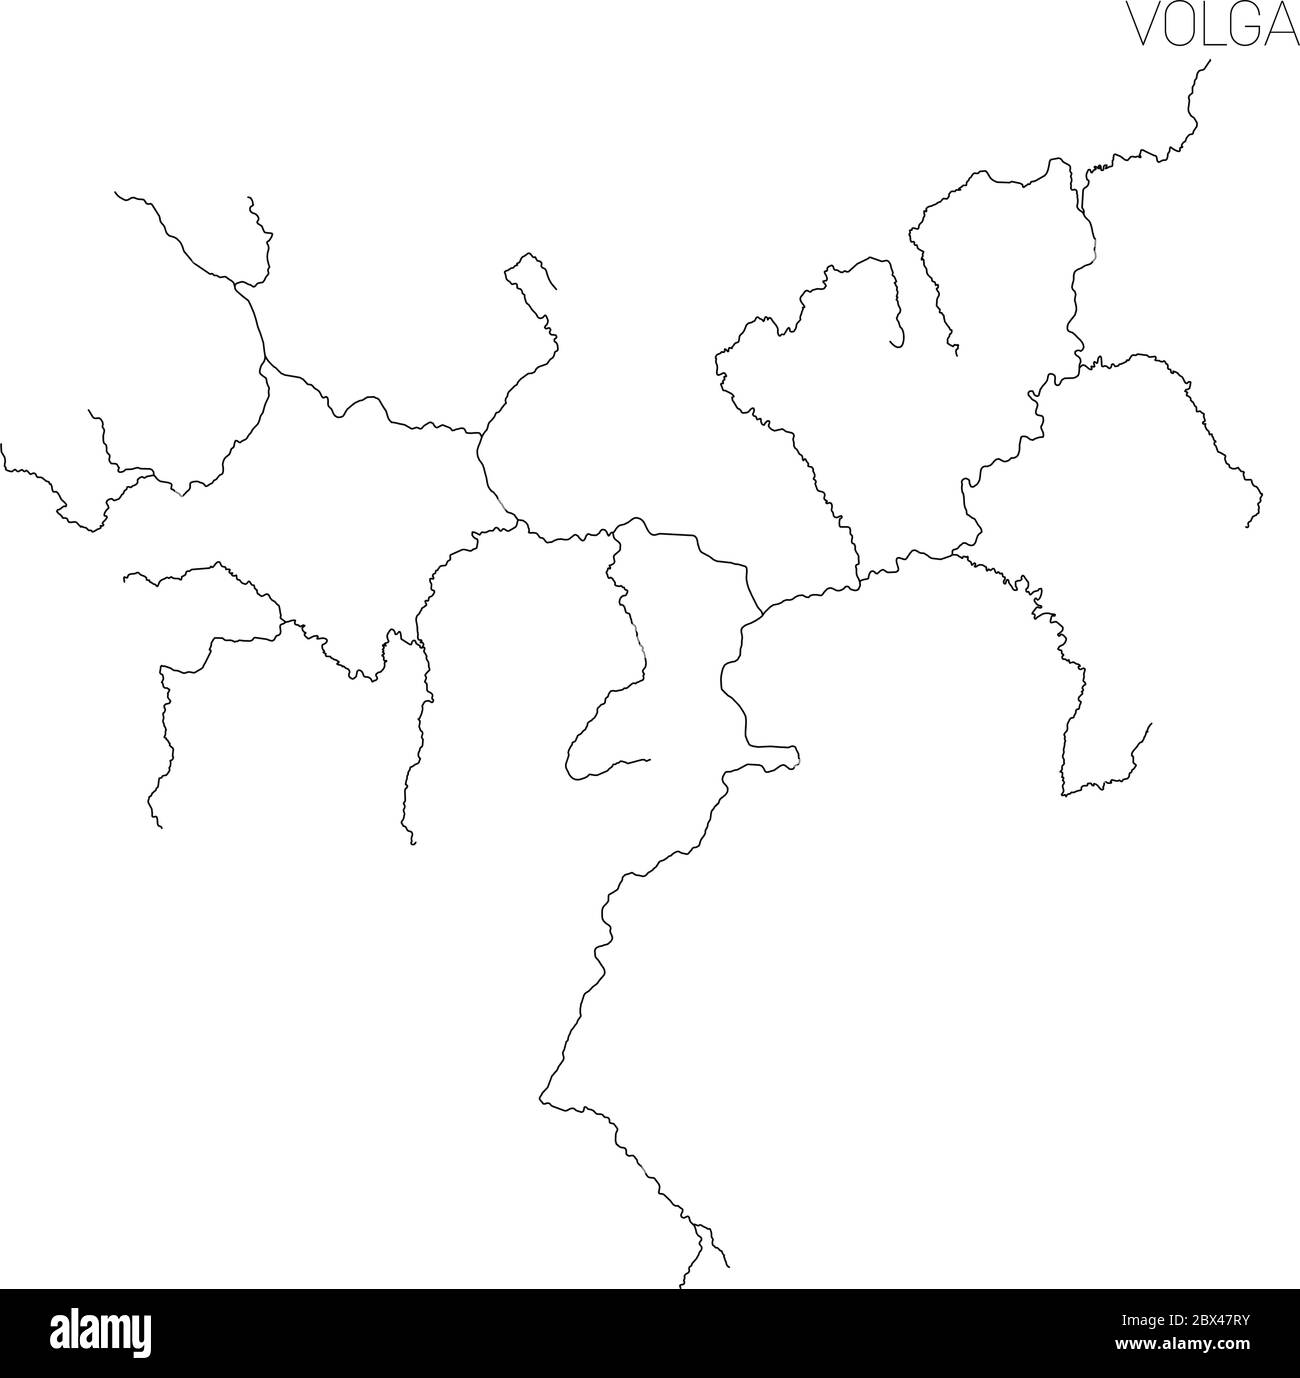 Mappa del bacino idrografico del fiume Volga. Semplice illustrazione vettoriale a contorno sottile. Illustrazione Vettoriale